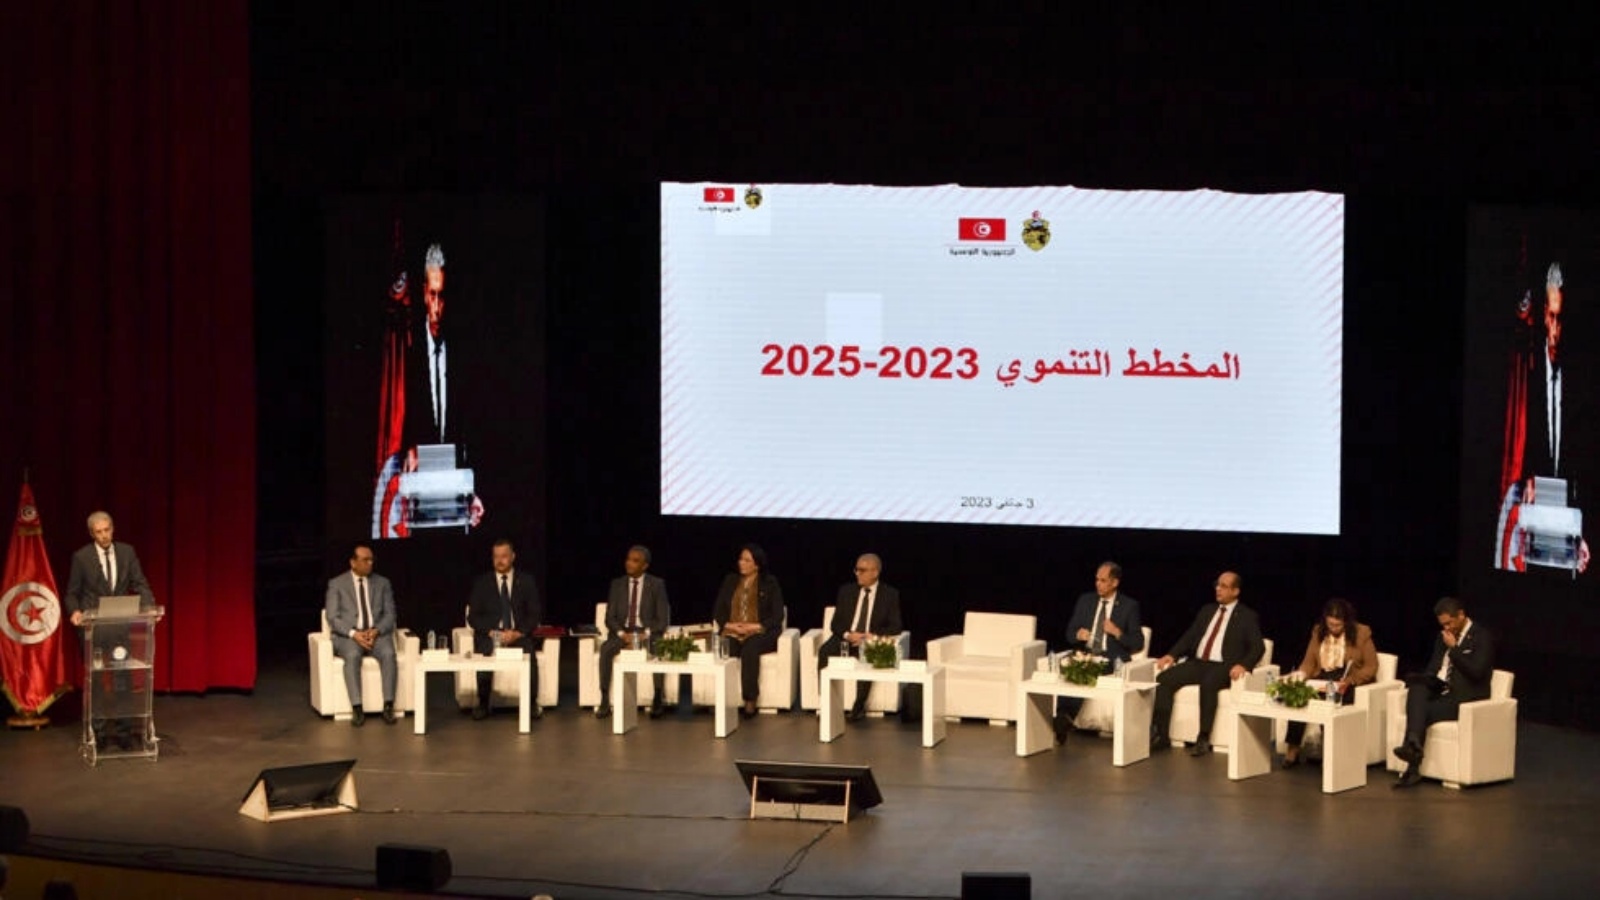 صورة مؤرخة في 3 يناير 2023 خلال تقديم وزراء تونسيون المخطط التنموي 2023-2025 في العاصمة تونس